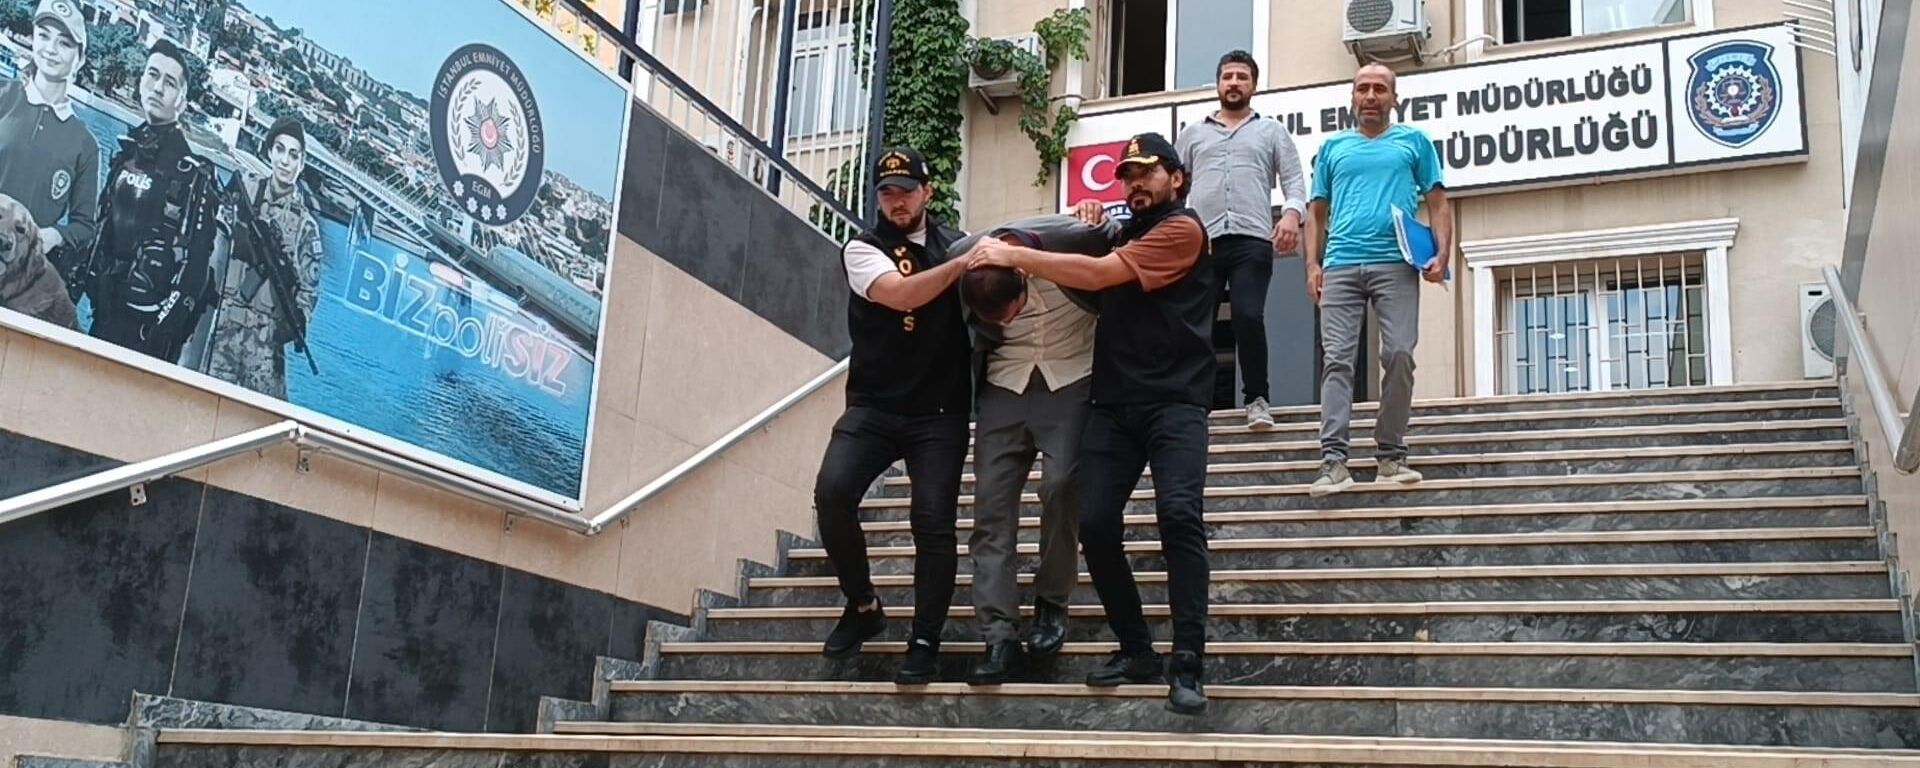 Cumhurbaşkanı Erdoğan’ın sesini taklit ederek dolandırıcılık yapmaya çalışan şüpheli tutuklandı - Sputnik Türkiye, 1920, 18.08.2023